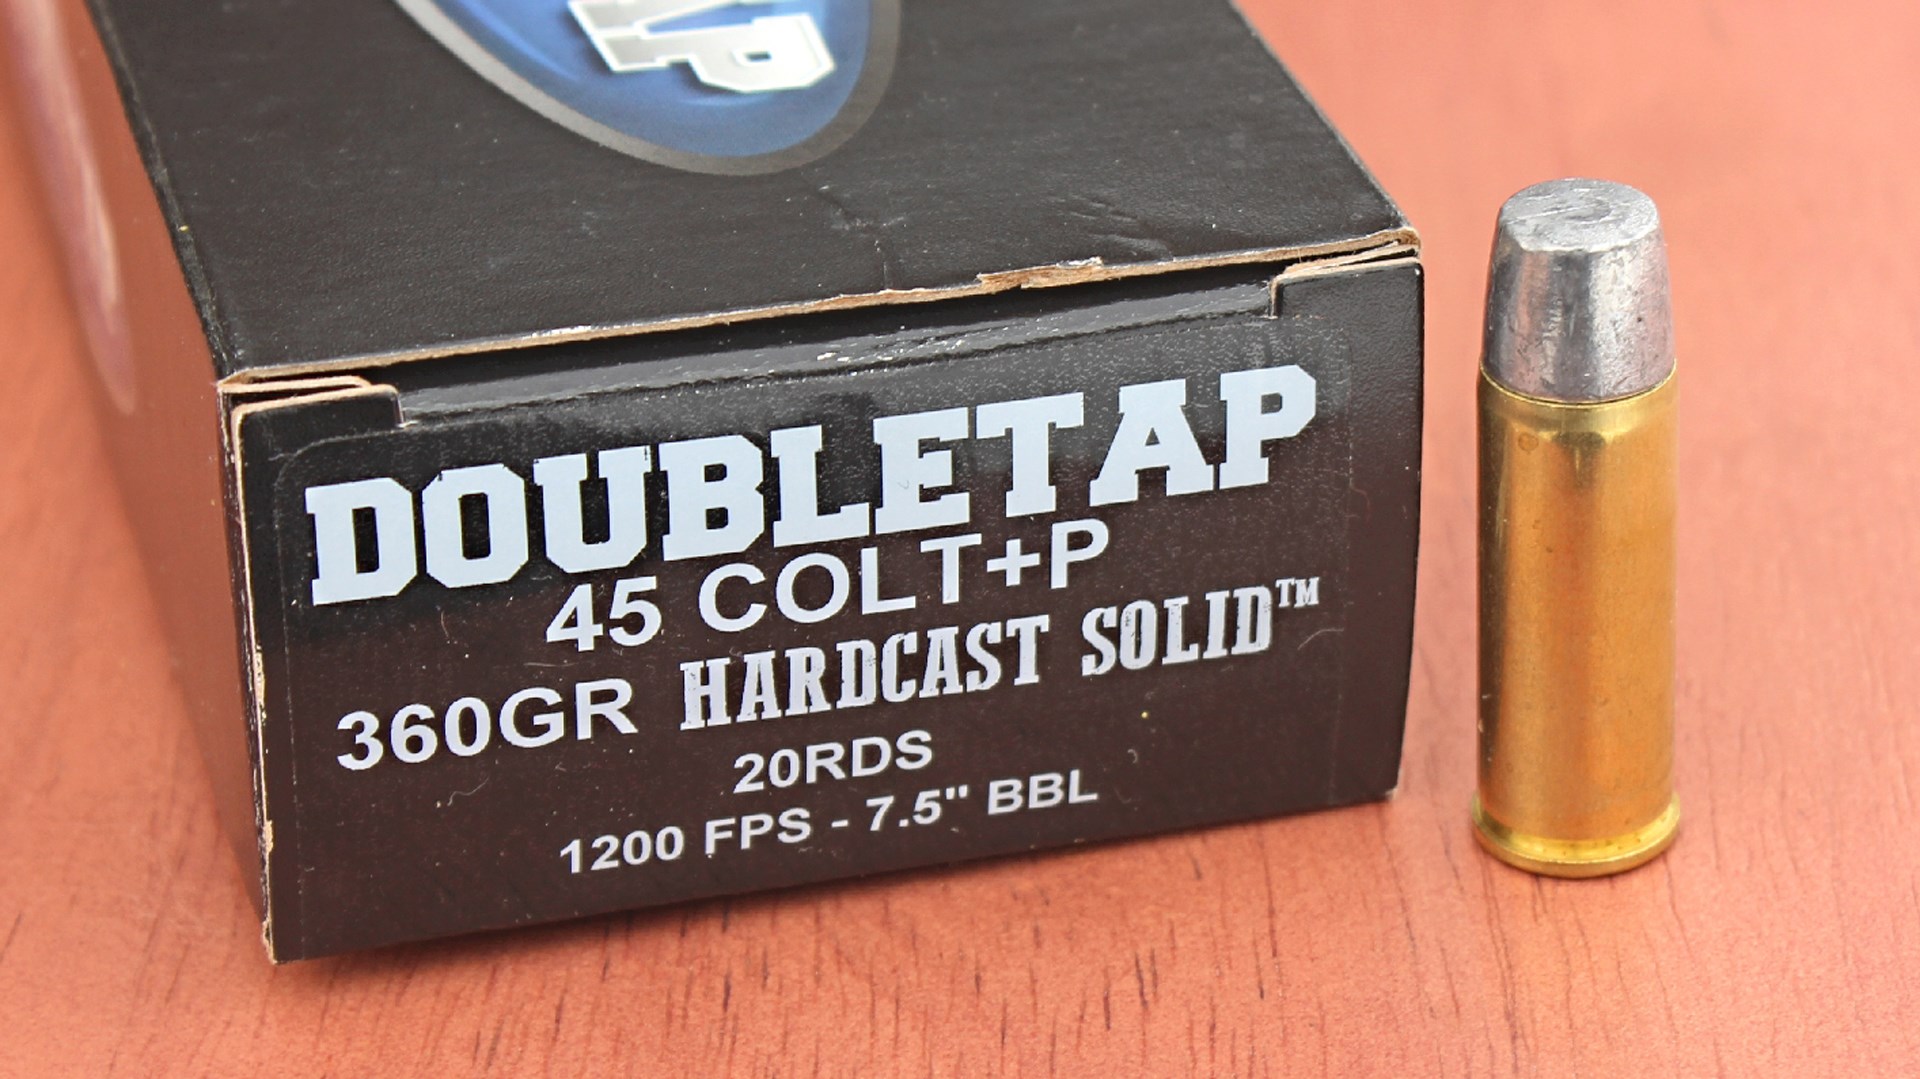 doubletap 45 colt +P 360gr hardcast solid 20rds 1200 fps